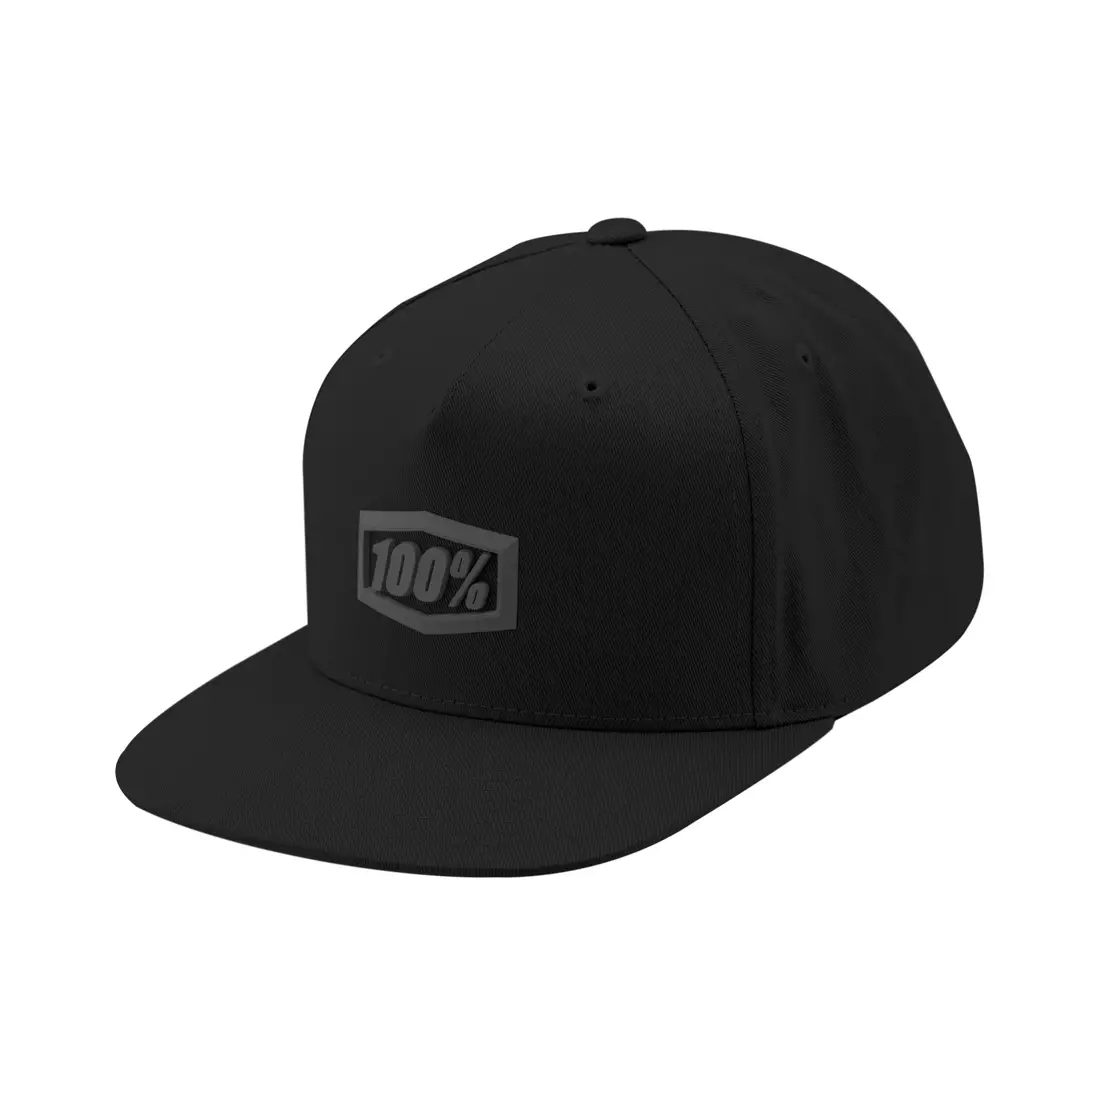 100% baseballová čepice ENTERPRISE Snapback Hat Black/Charcoal Speck 